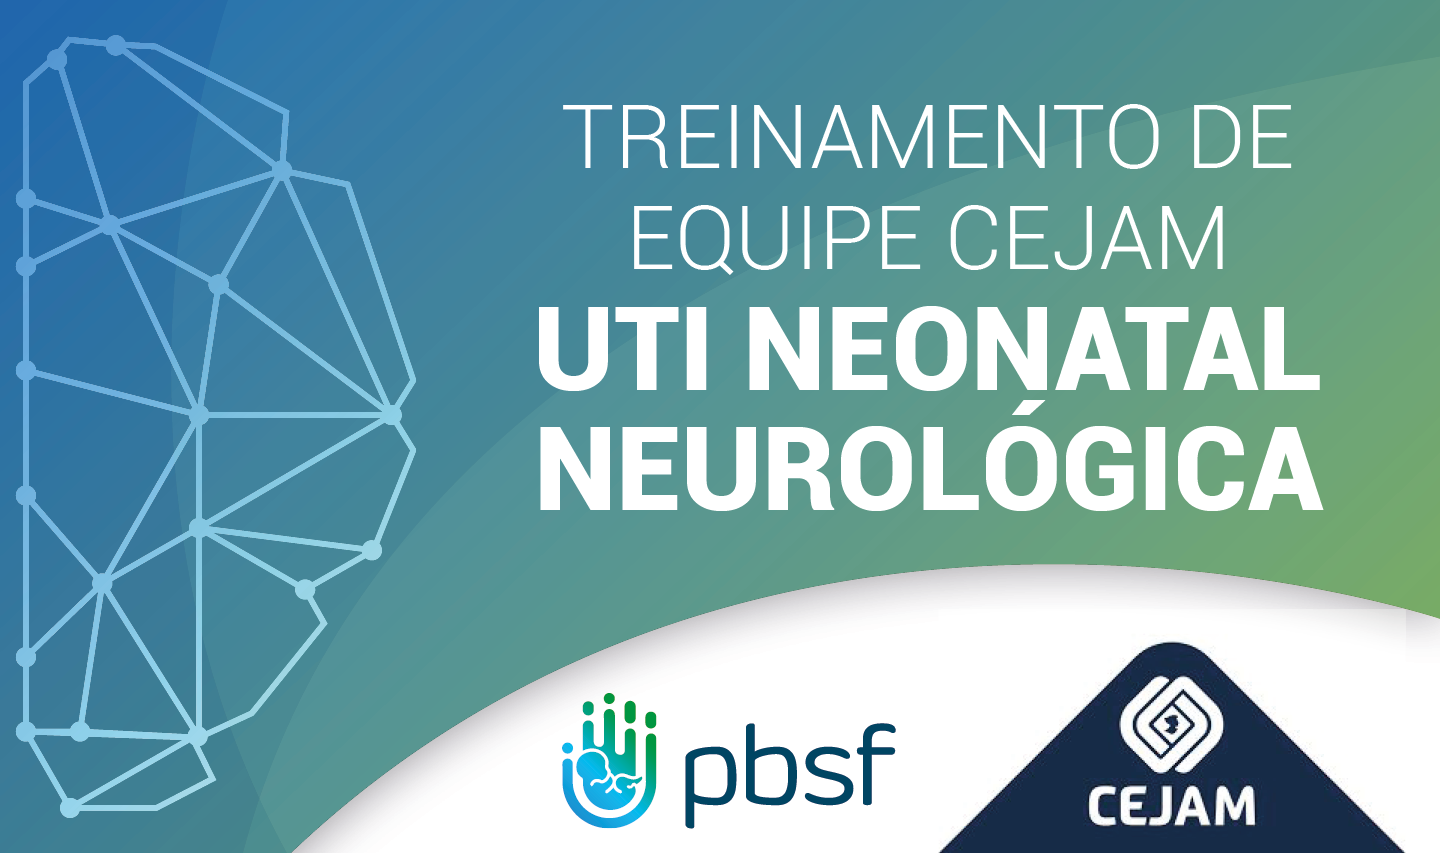 Treinamento de Equipe CEJAM – UTI Neonatal Neurológica